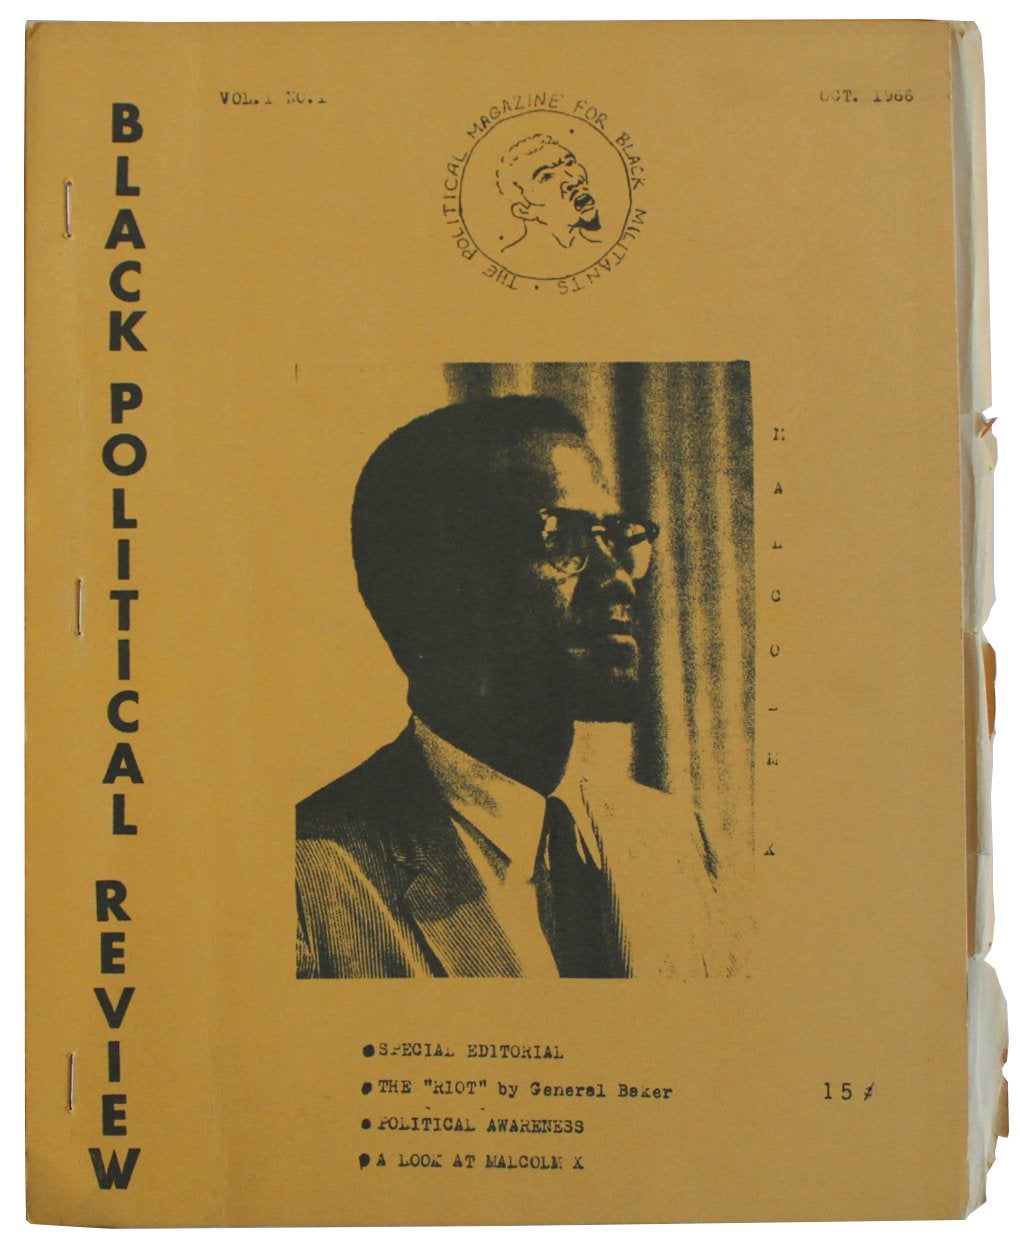 Black Political Review. Vol. 1 No. 1. October 1966. C. Higgins, James Williams, obert.